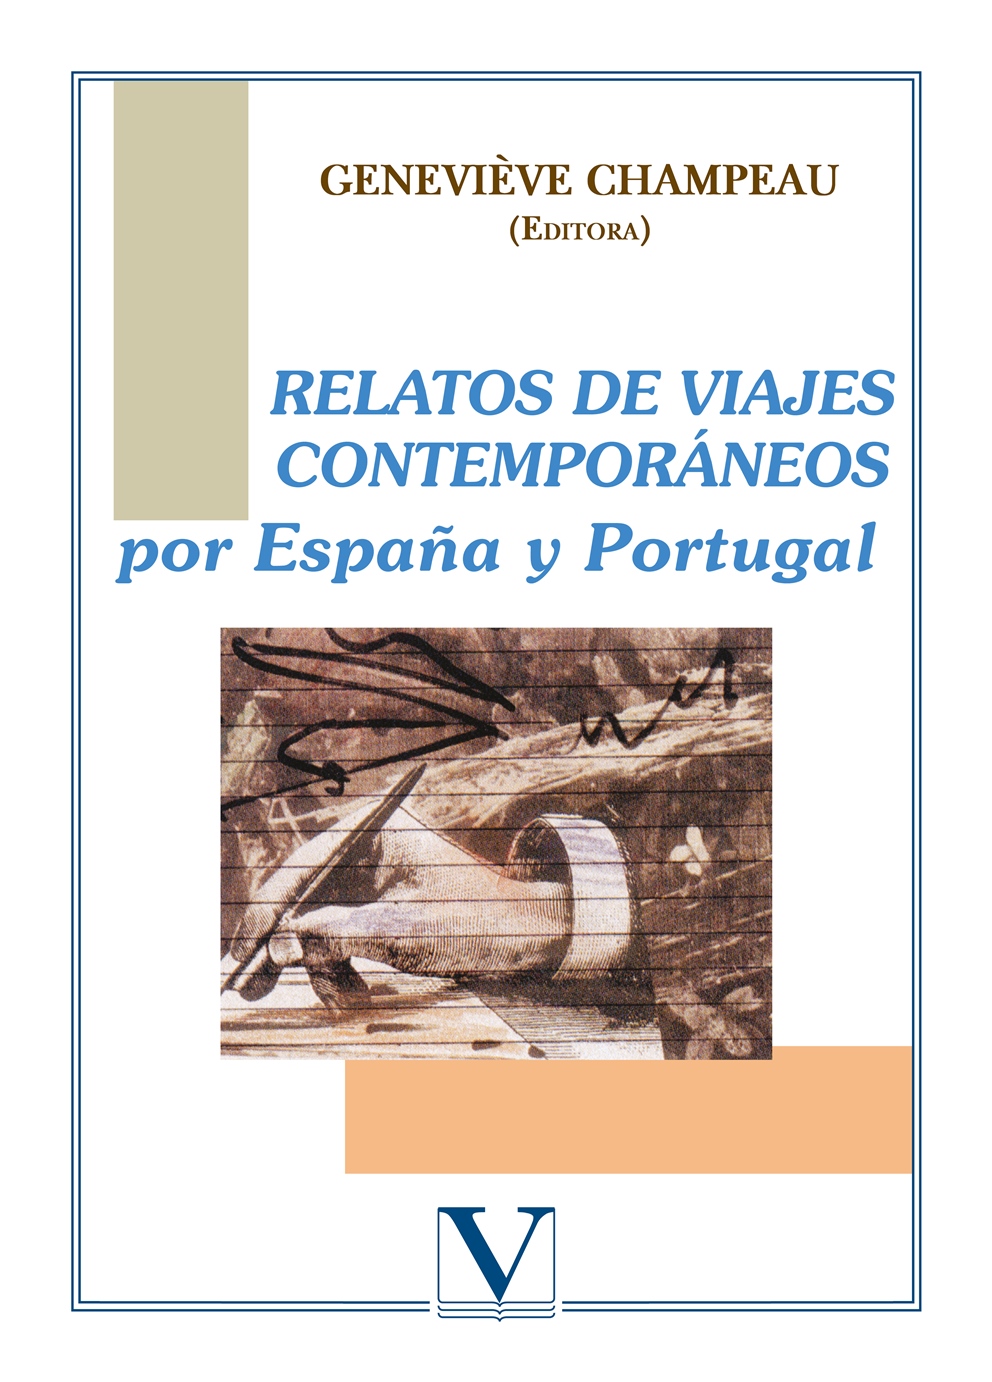 Relatos de viajes contemporáneos por España y Portugal - Champeau,Geneviève